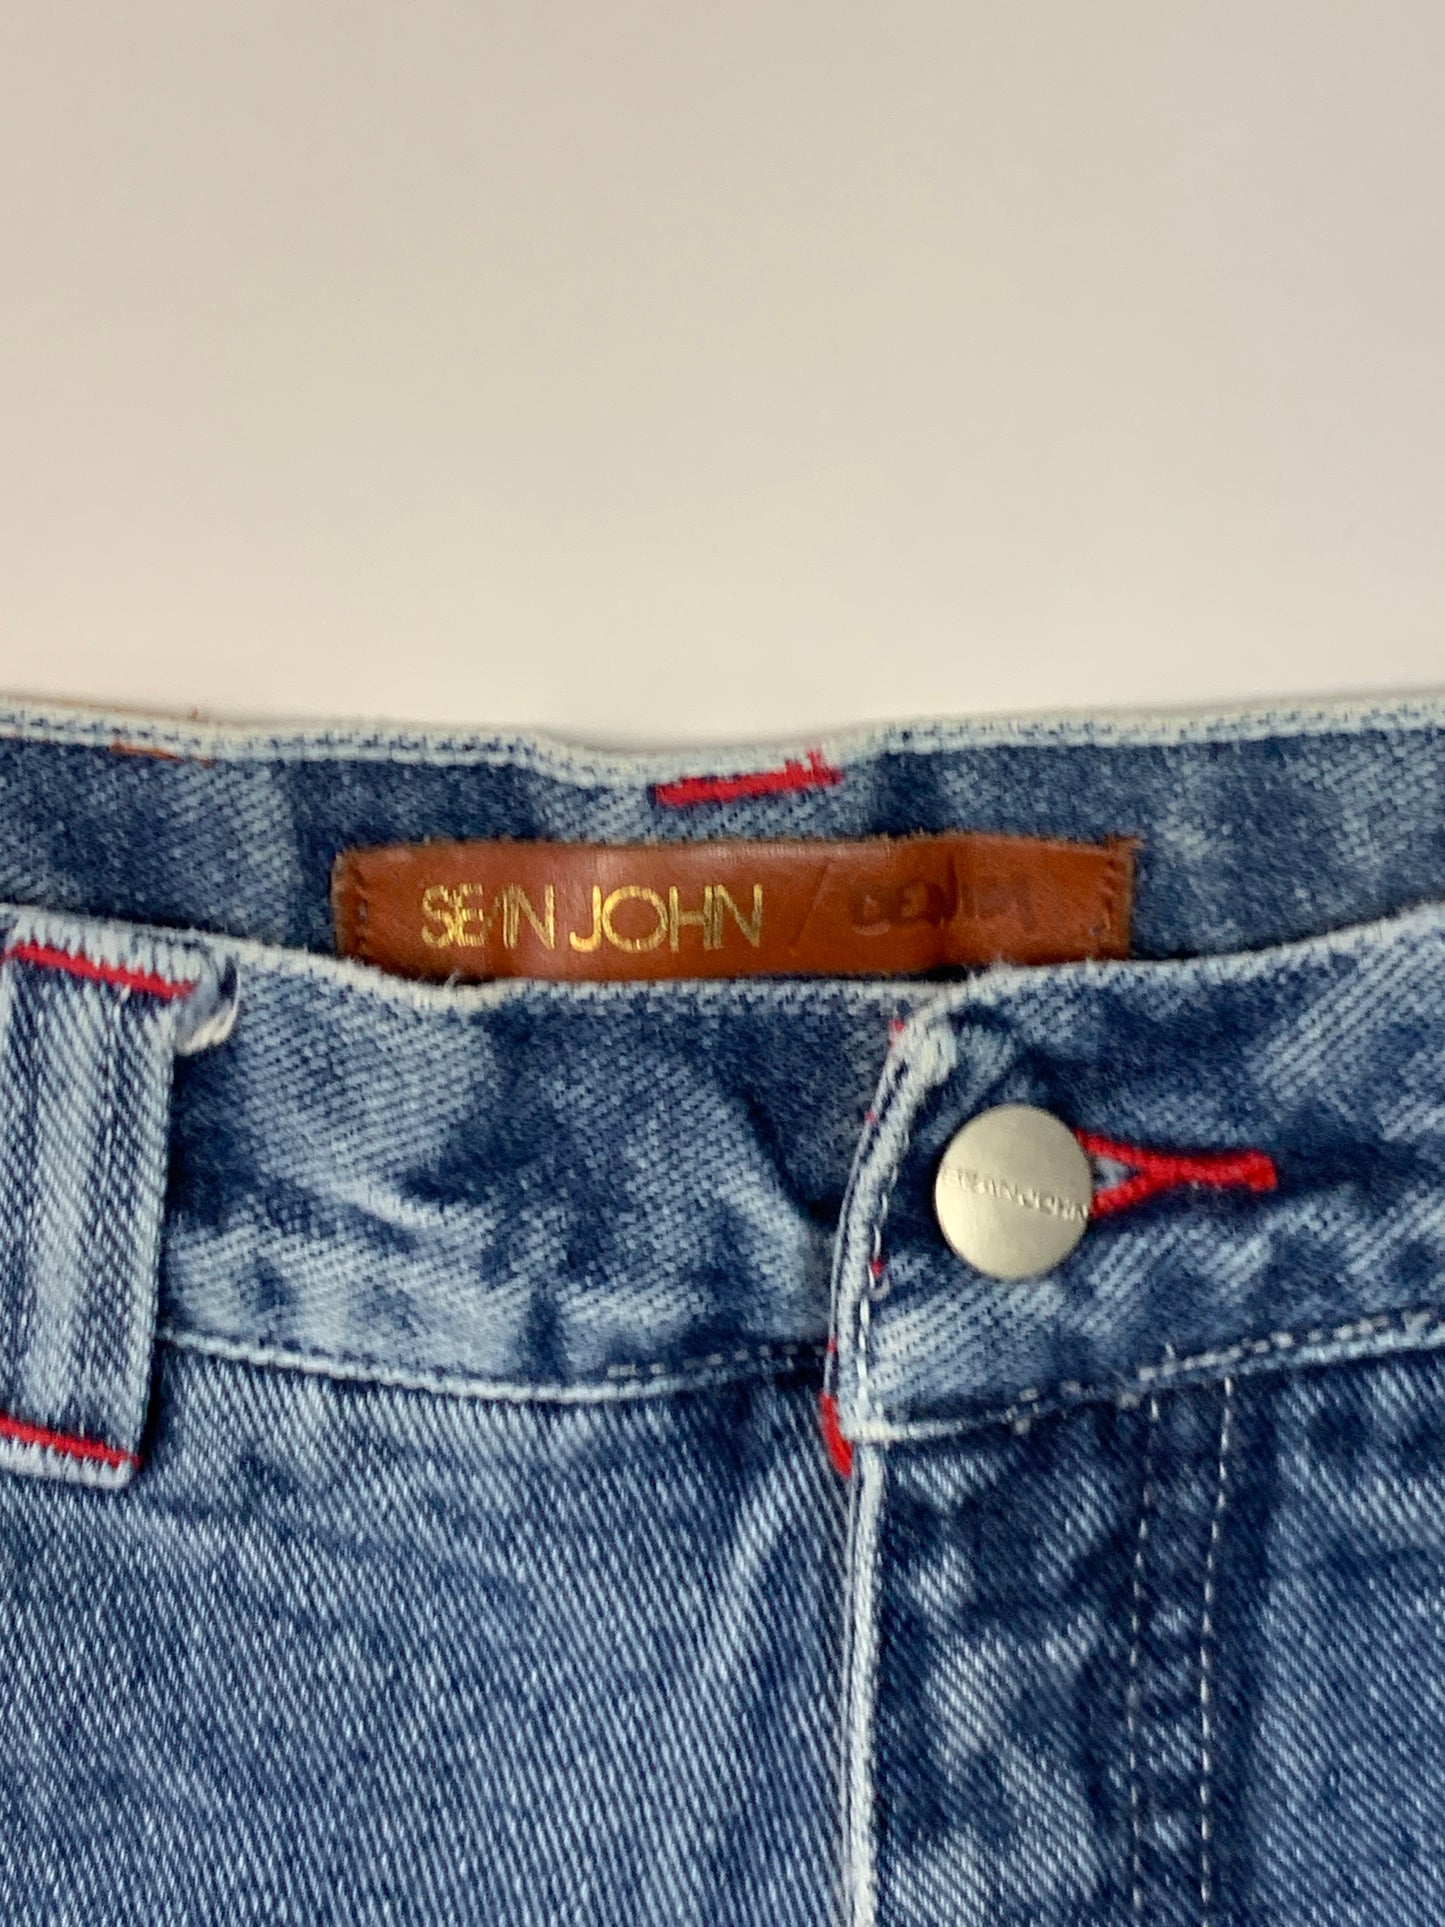 Sean John Vintage Y2K Jeans - 16